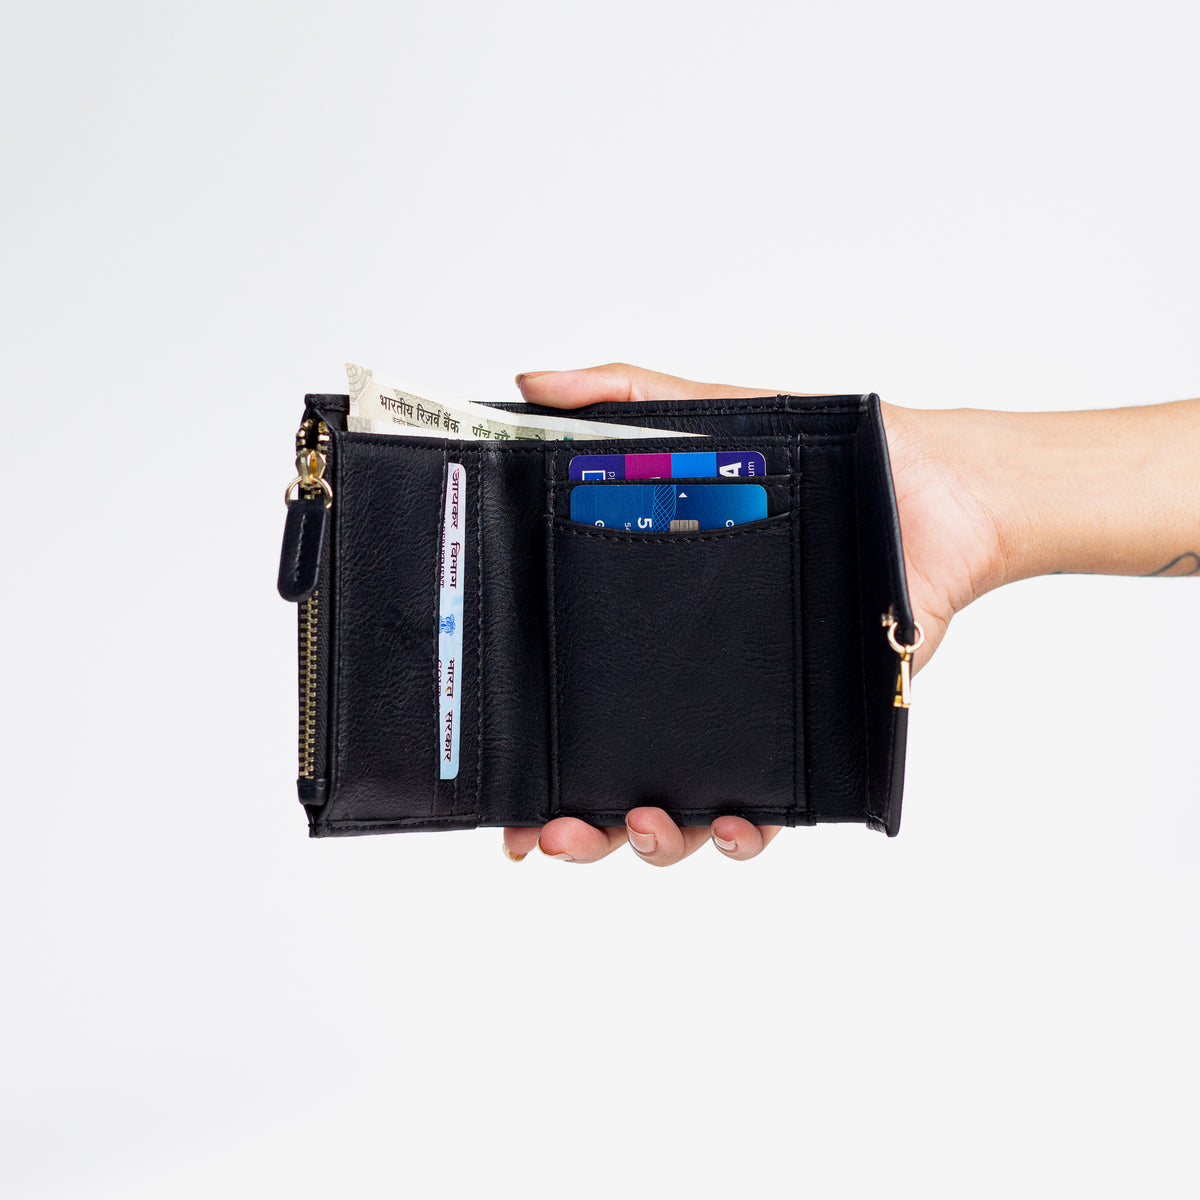 Women's Mini Wallet- Black